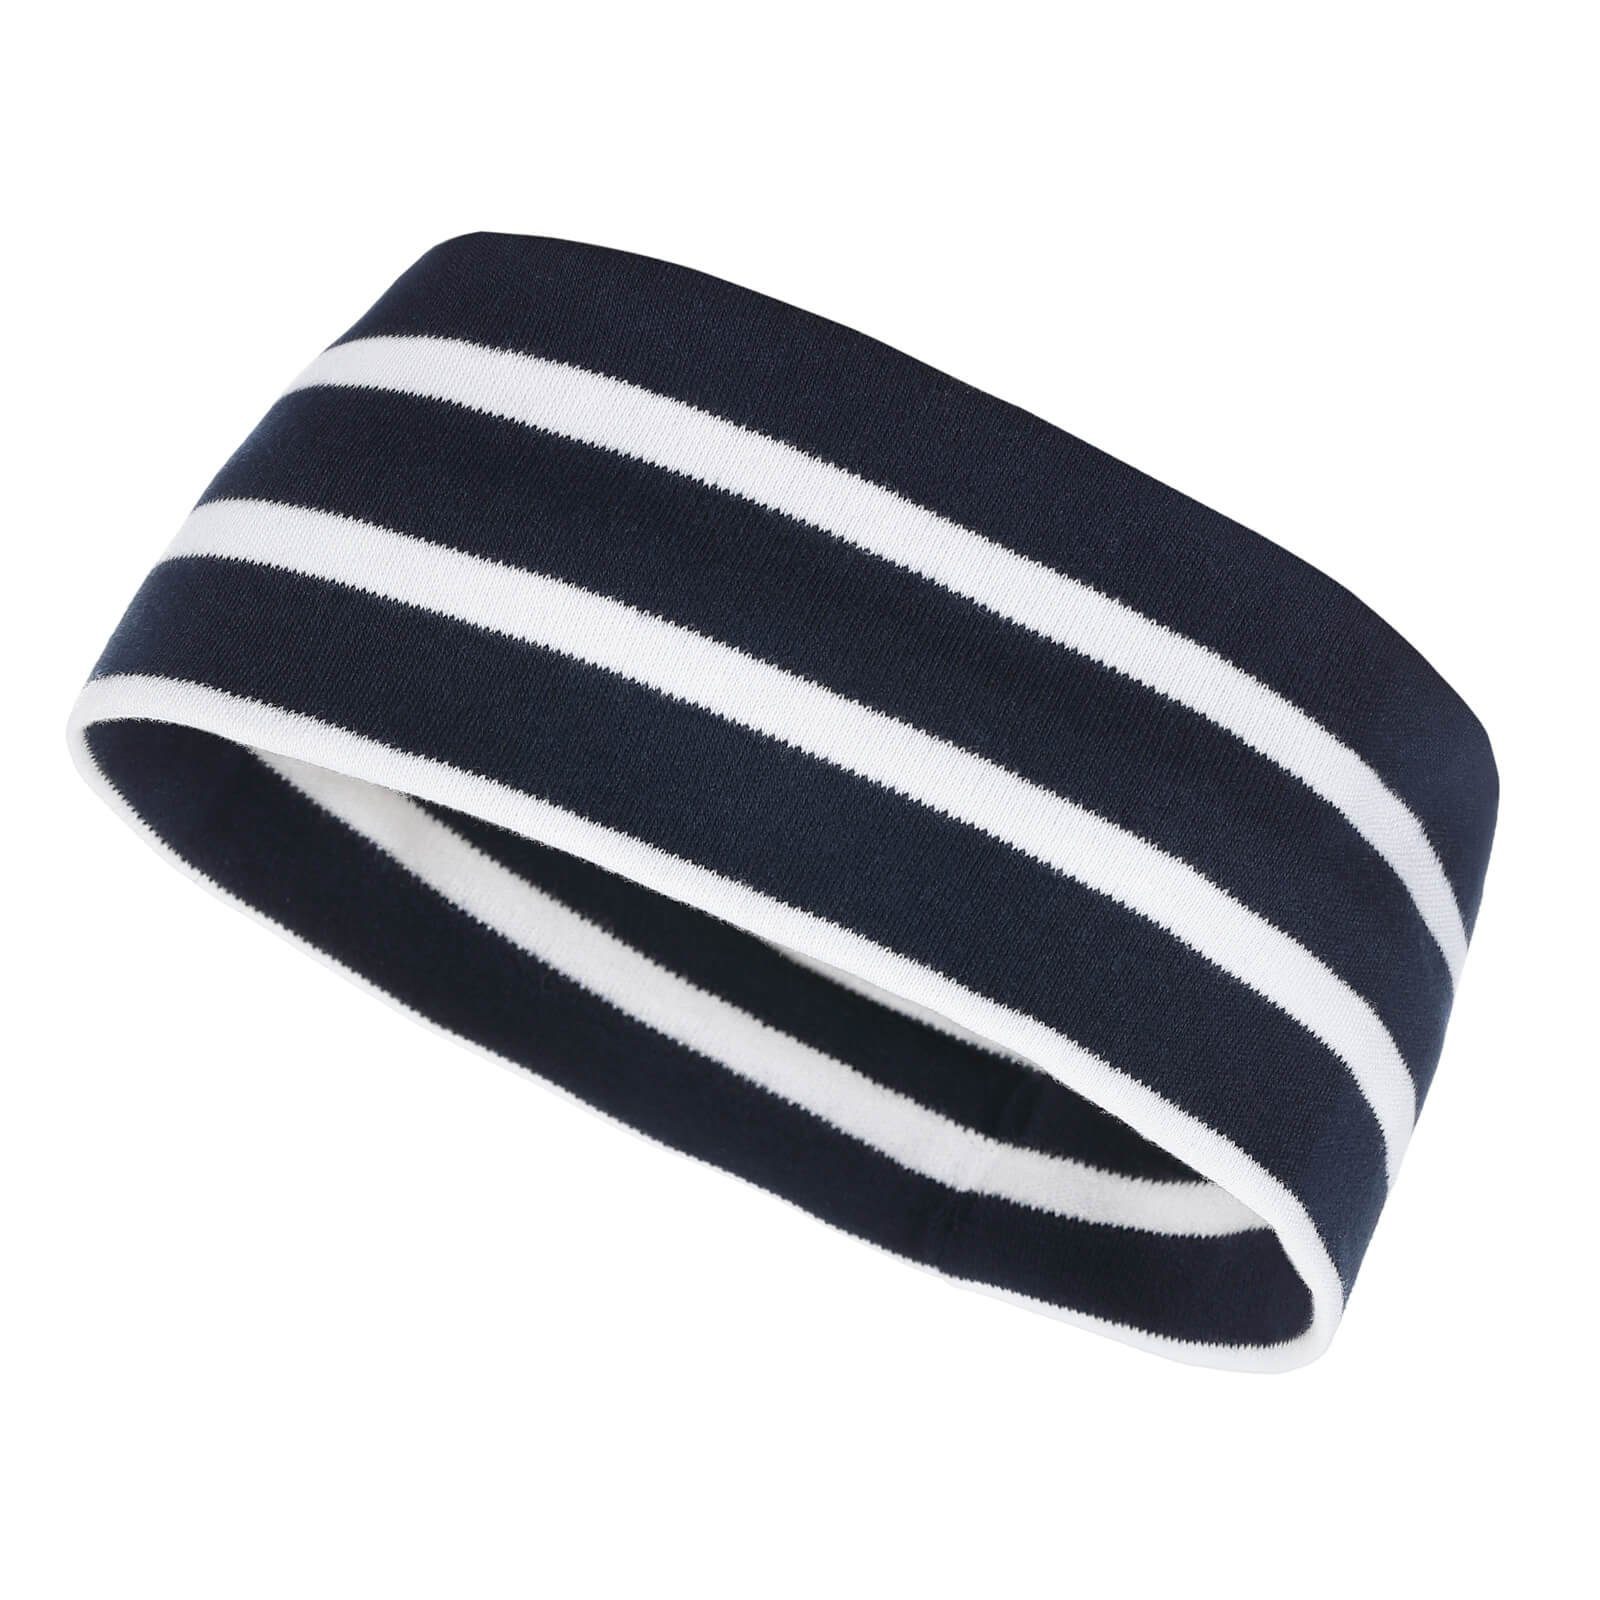 modAS Stirnband Unisex Kopfband Maritim für Kinder und Erwachsene zweilagig Baumwolle (05) blau / weiß